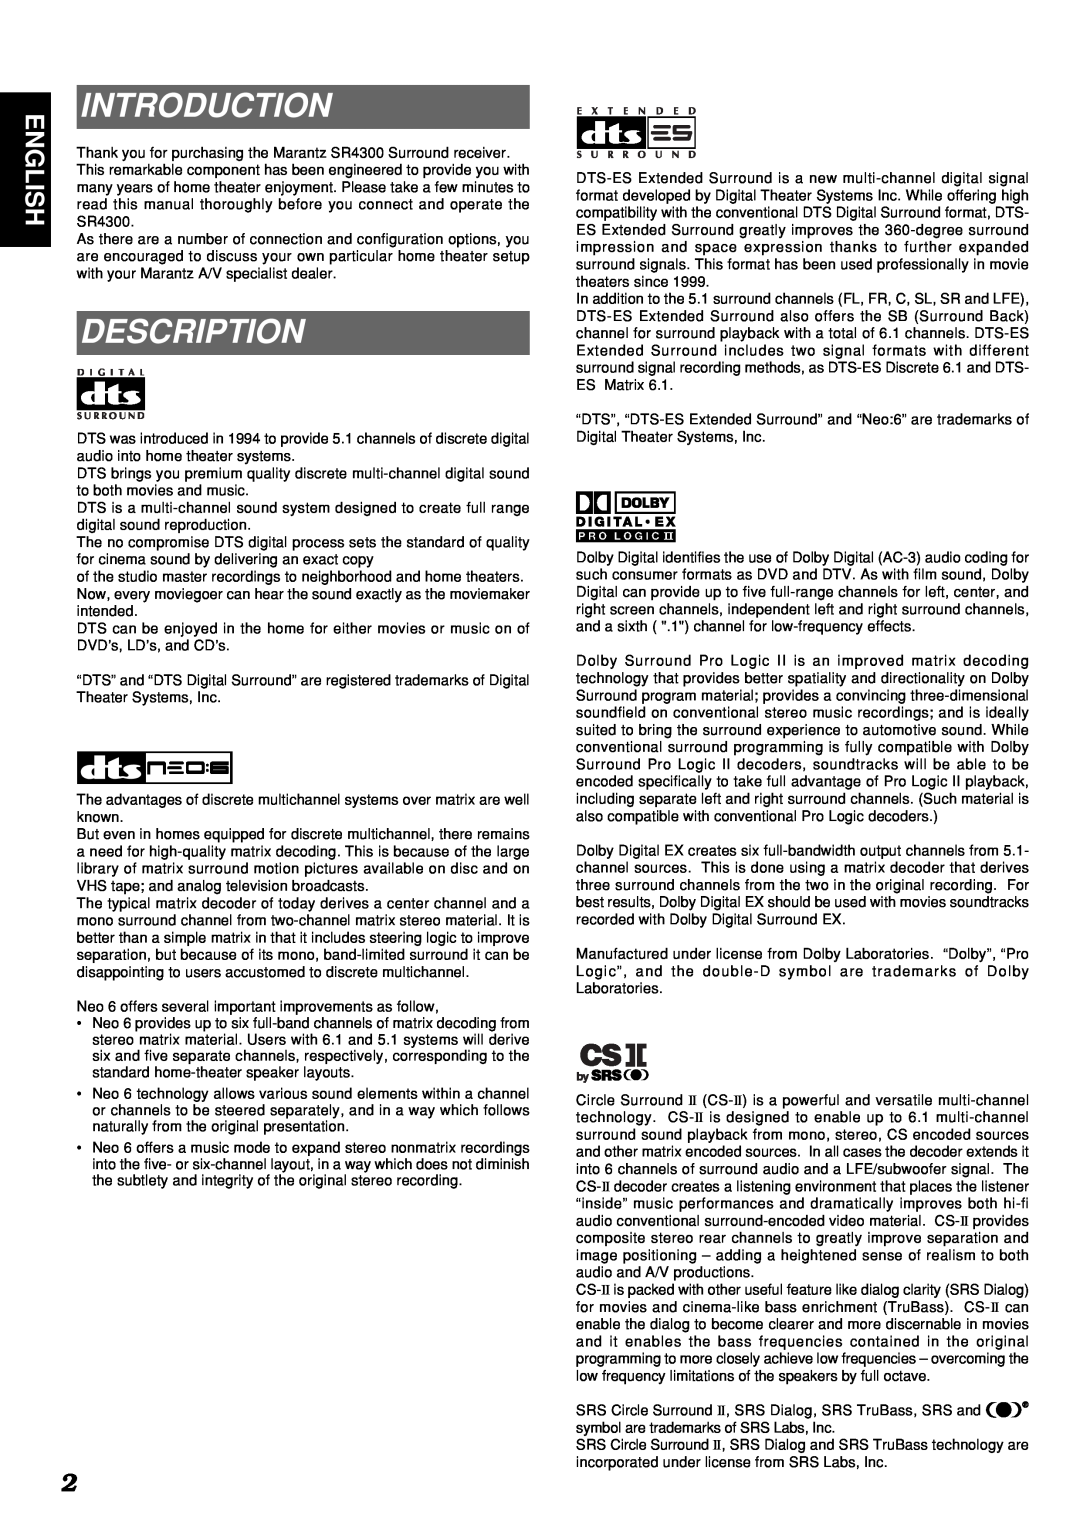 Marantz SR4300 manual Introduction, Description, English 